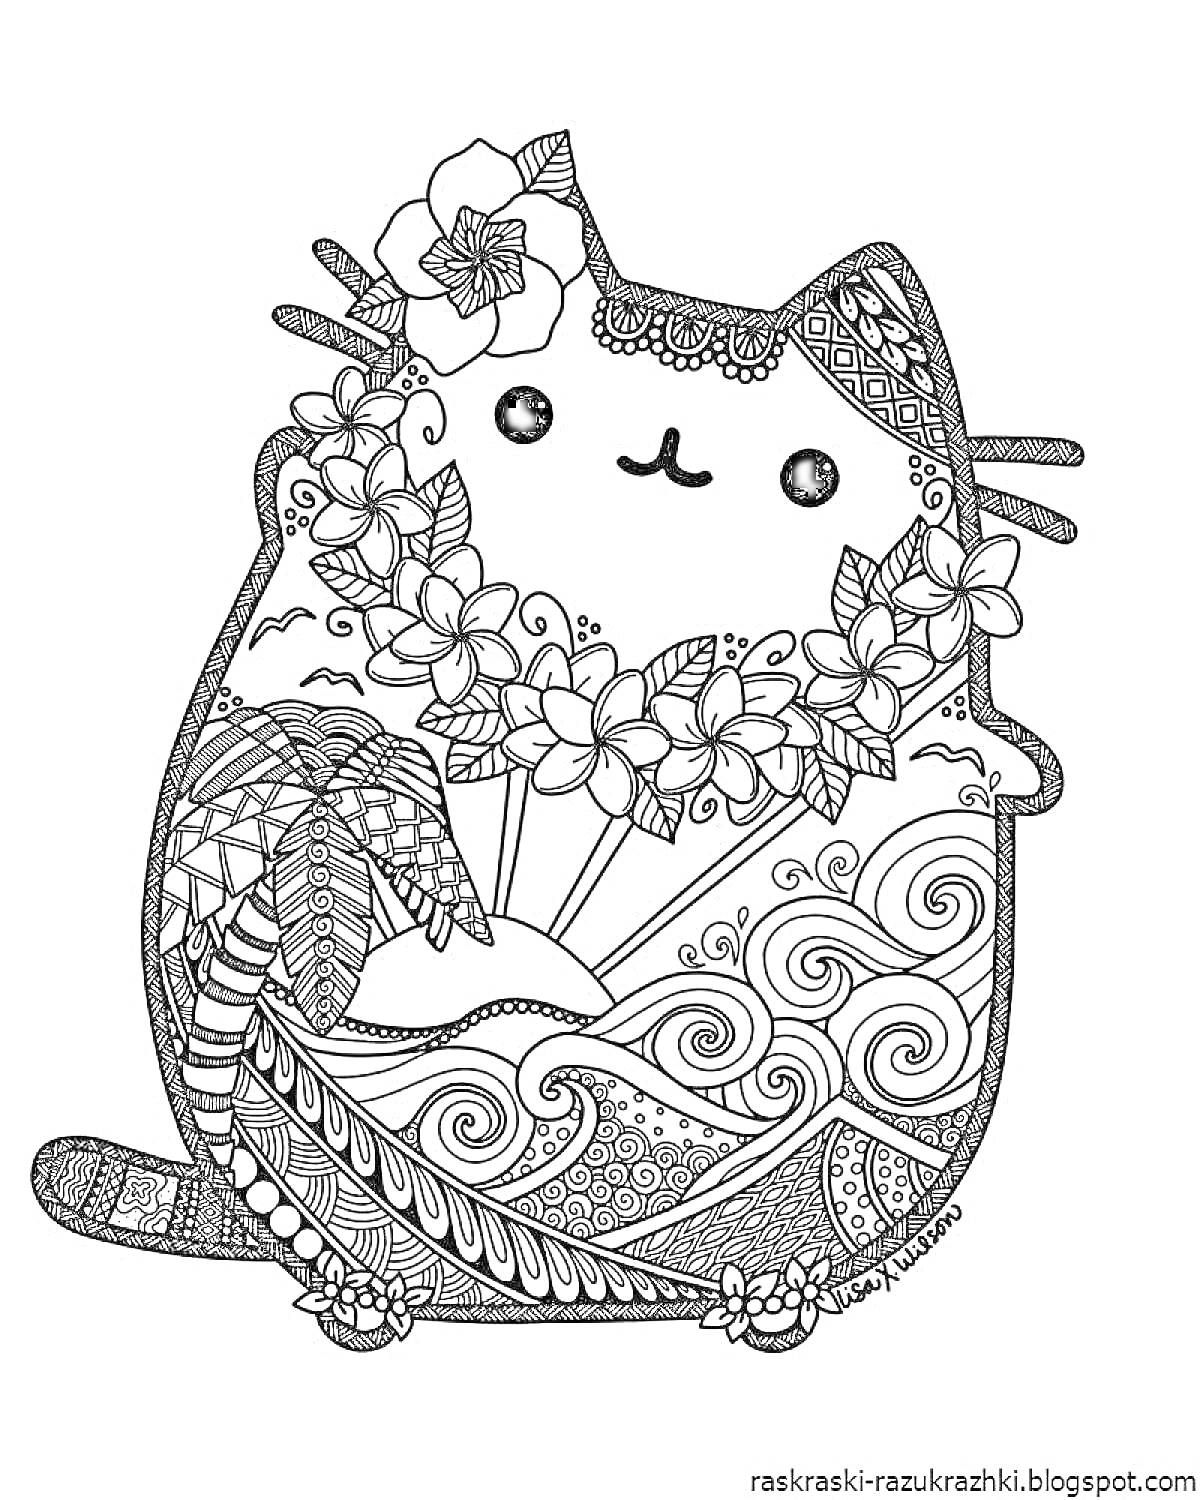 Раскраска Котик с венком из цветов на шее, пальма, волны, узоры